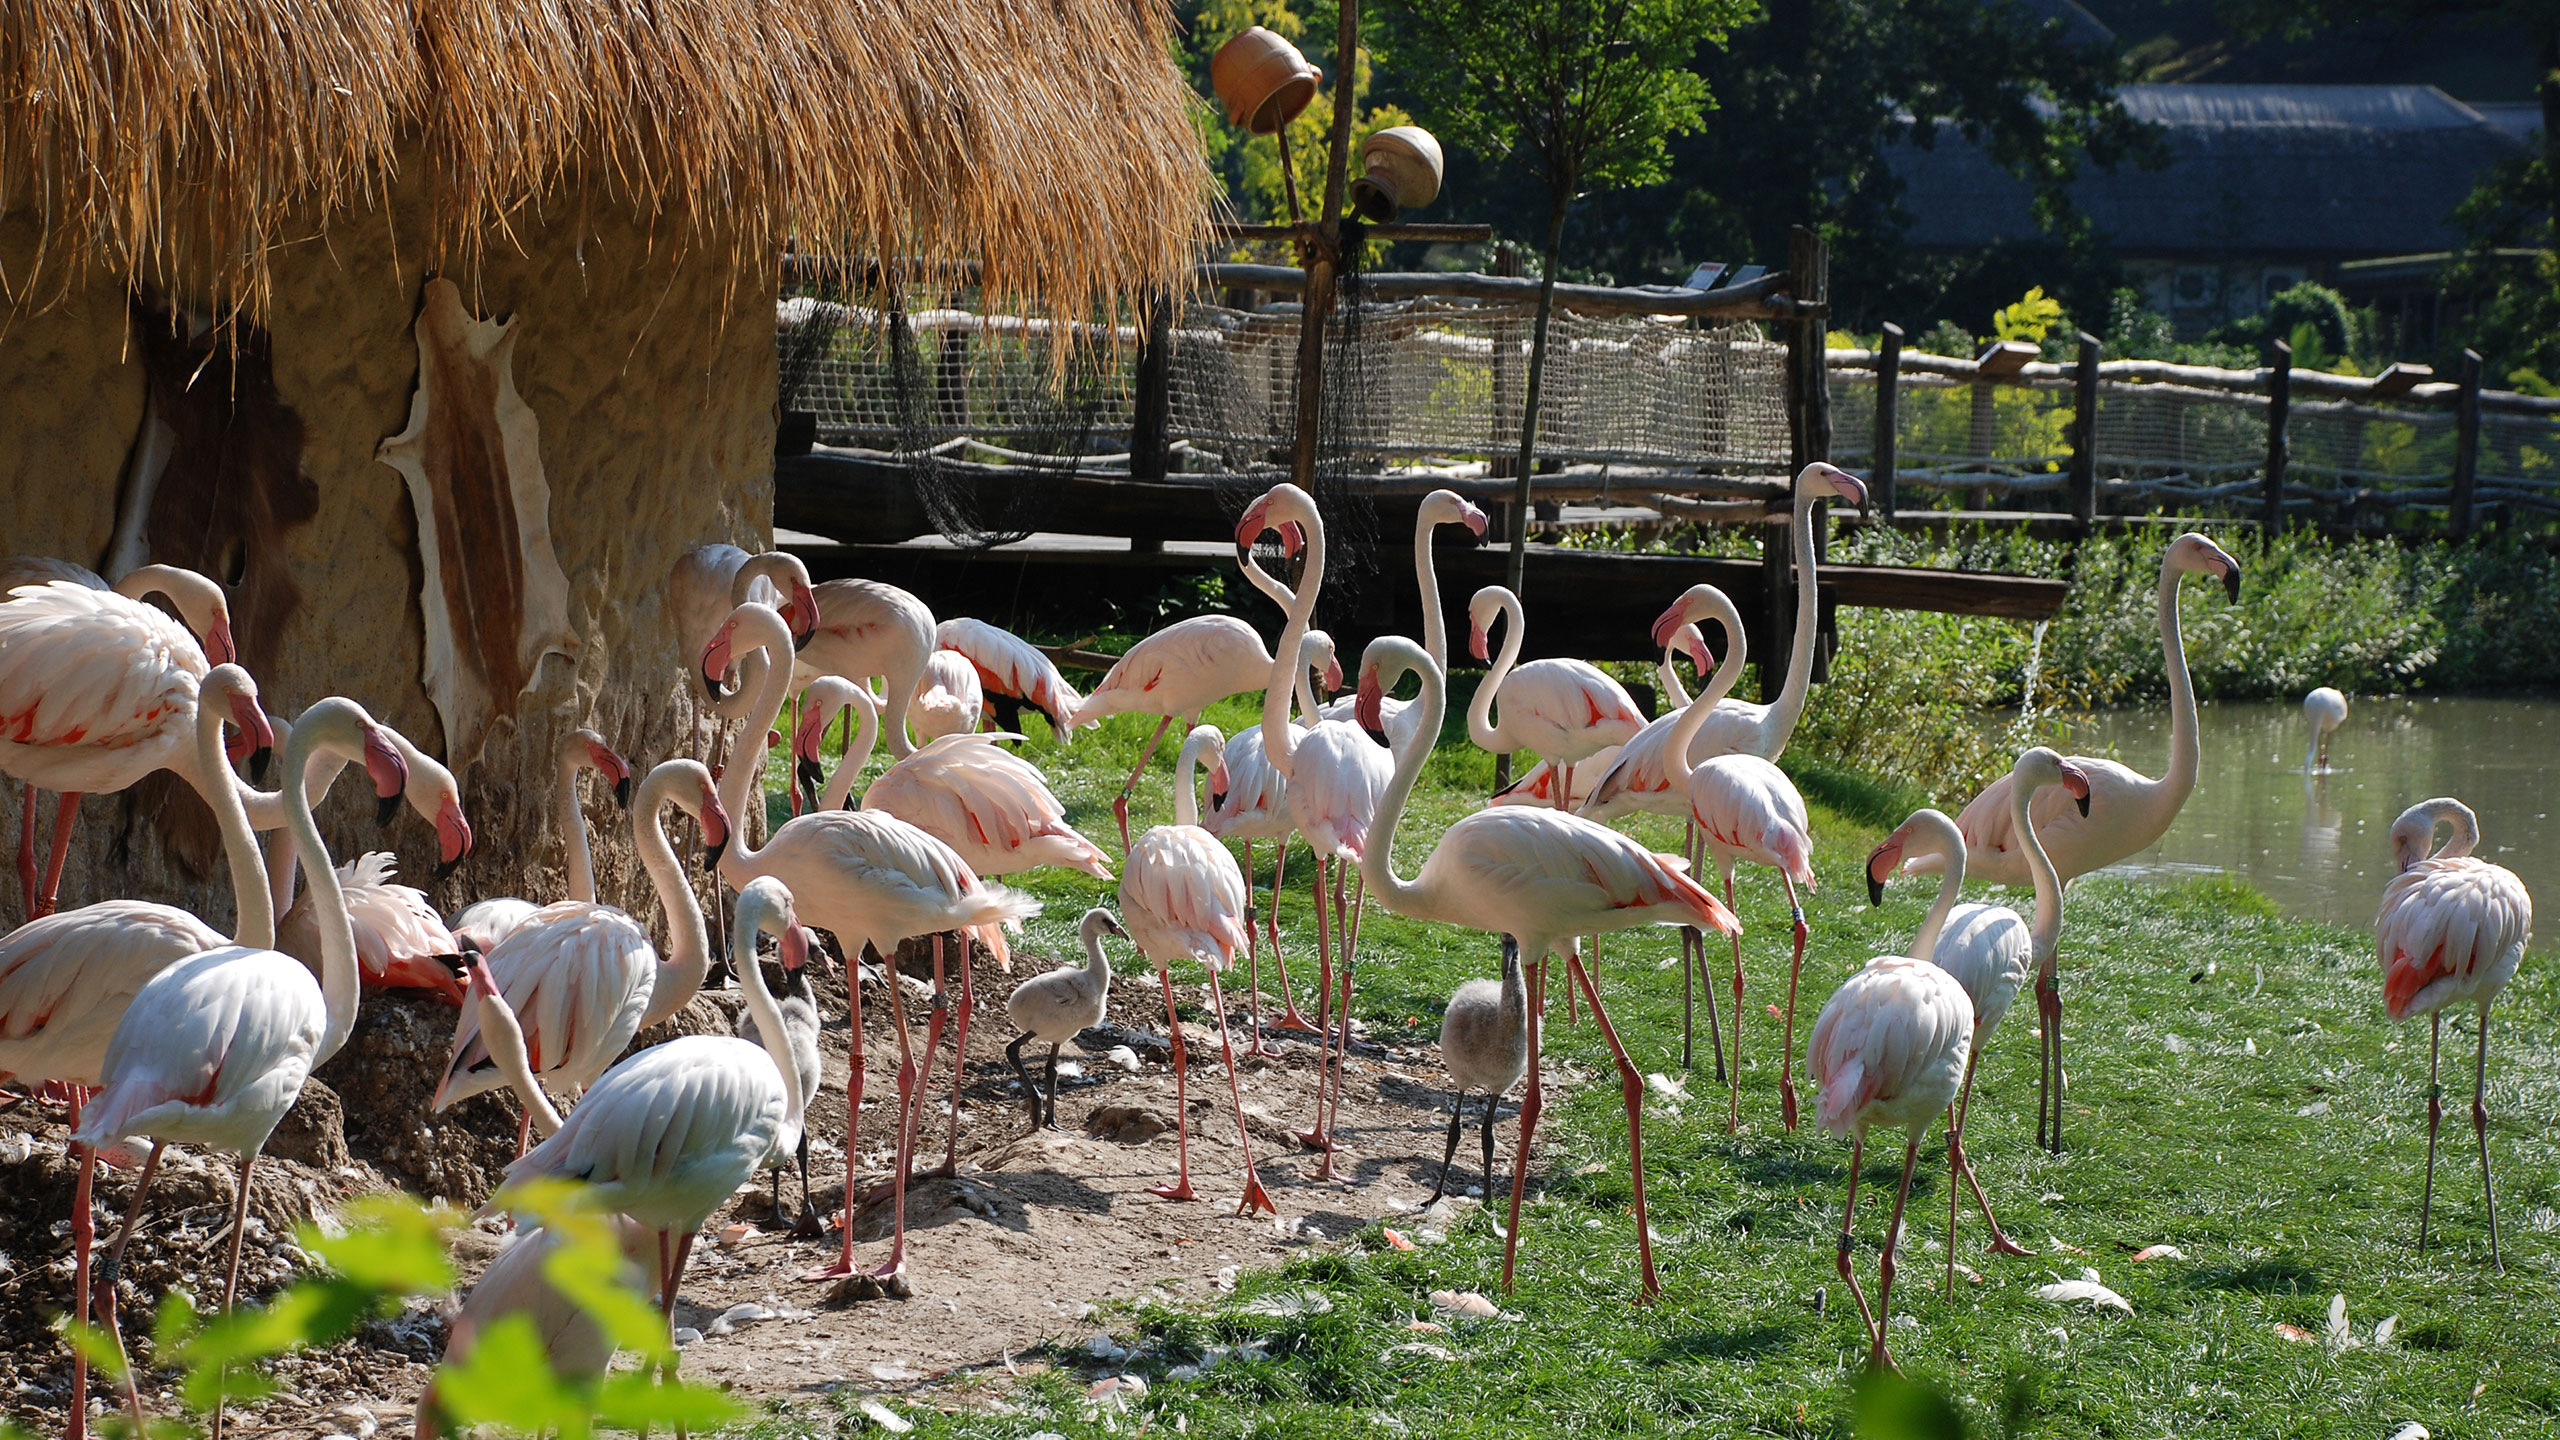 Flamingo enclosure